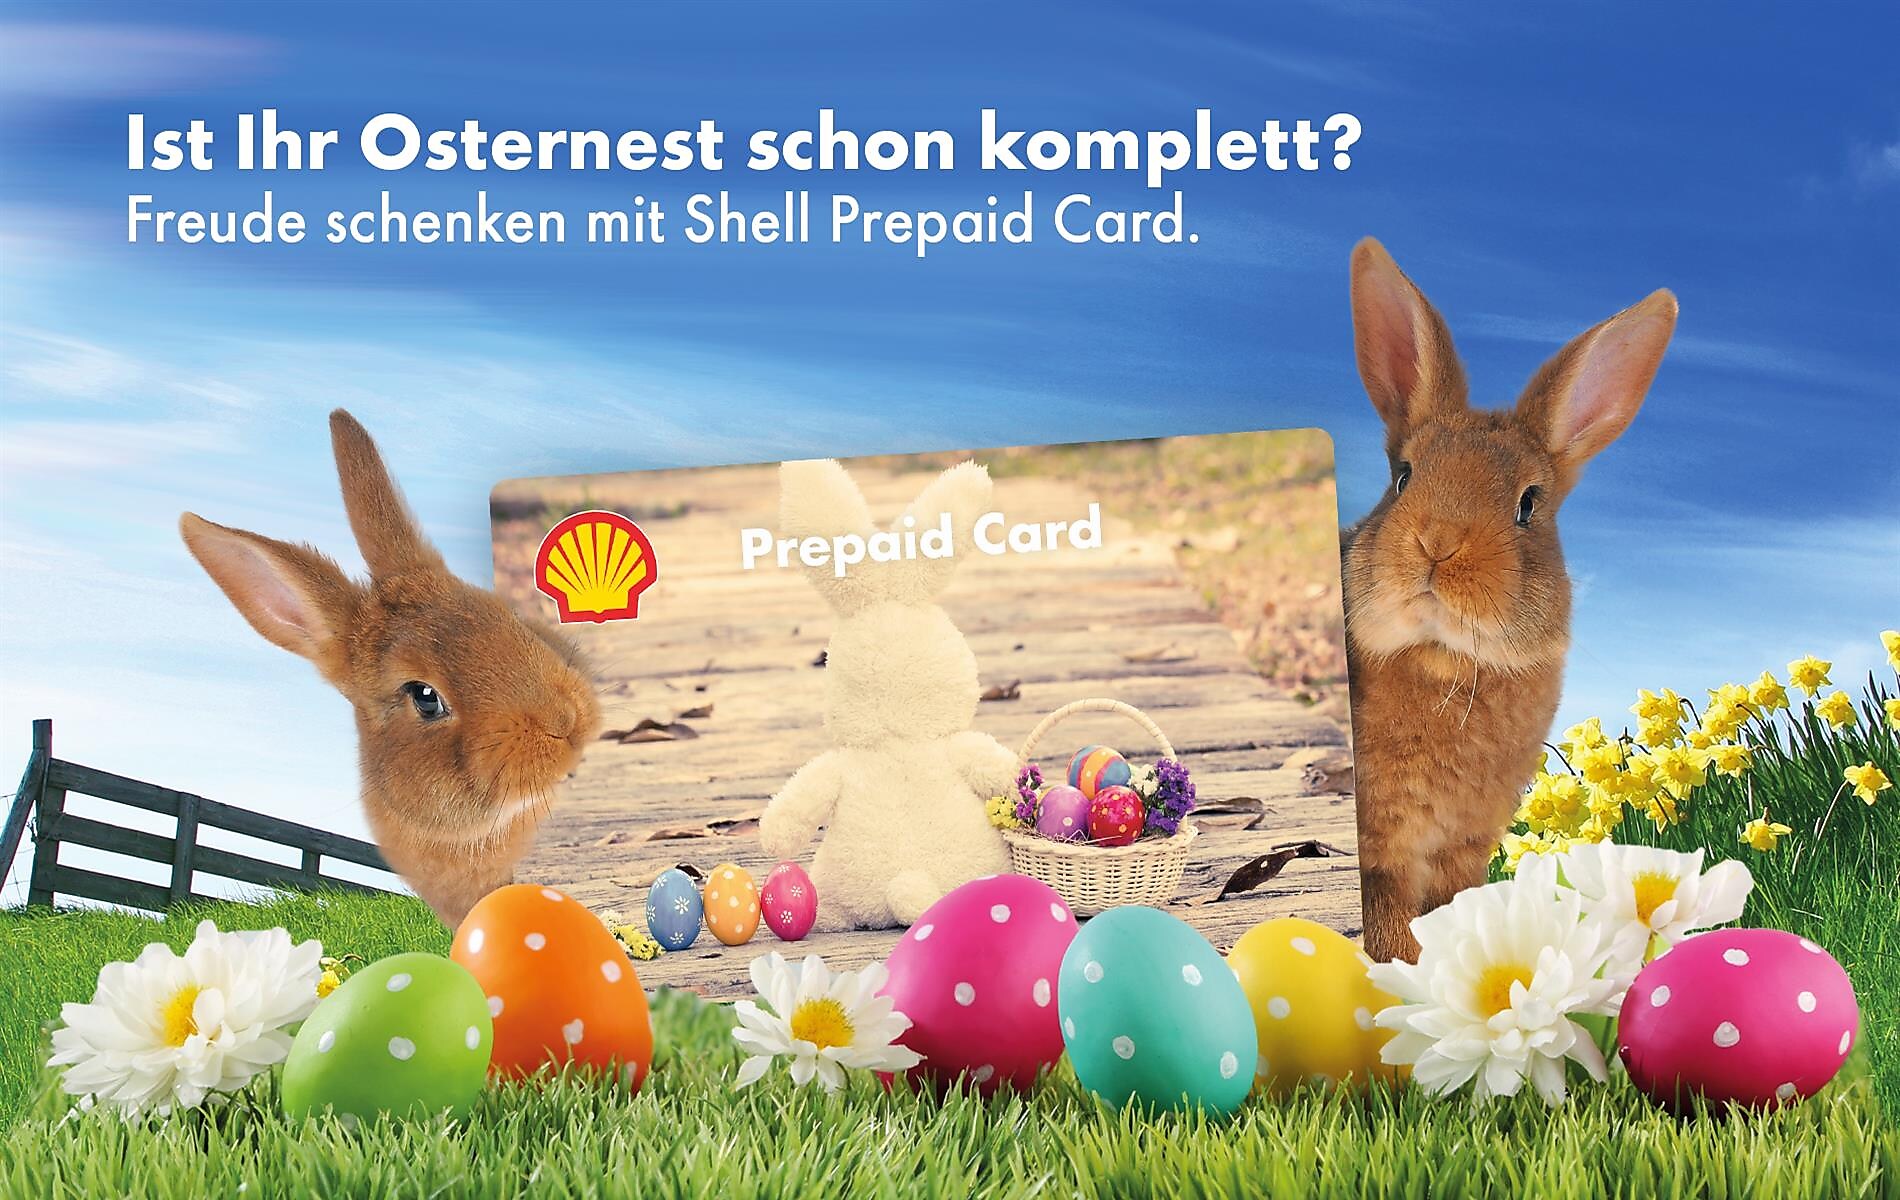 Jetzt Shell Prepaid Cards verschenken